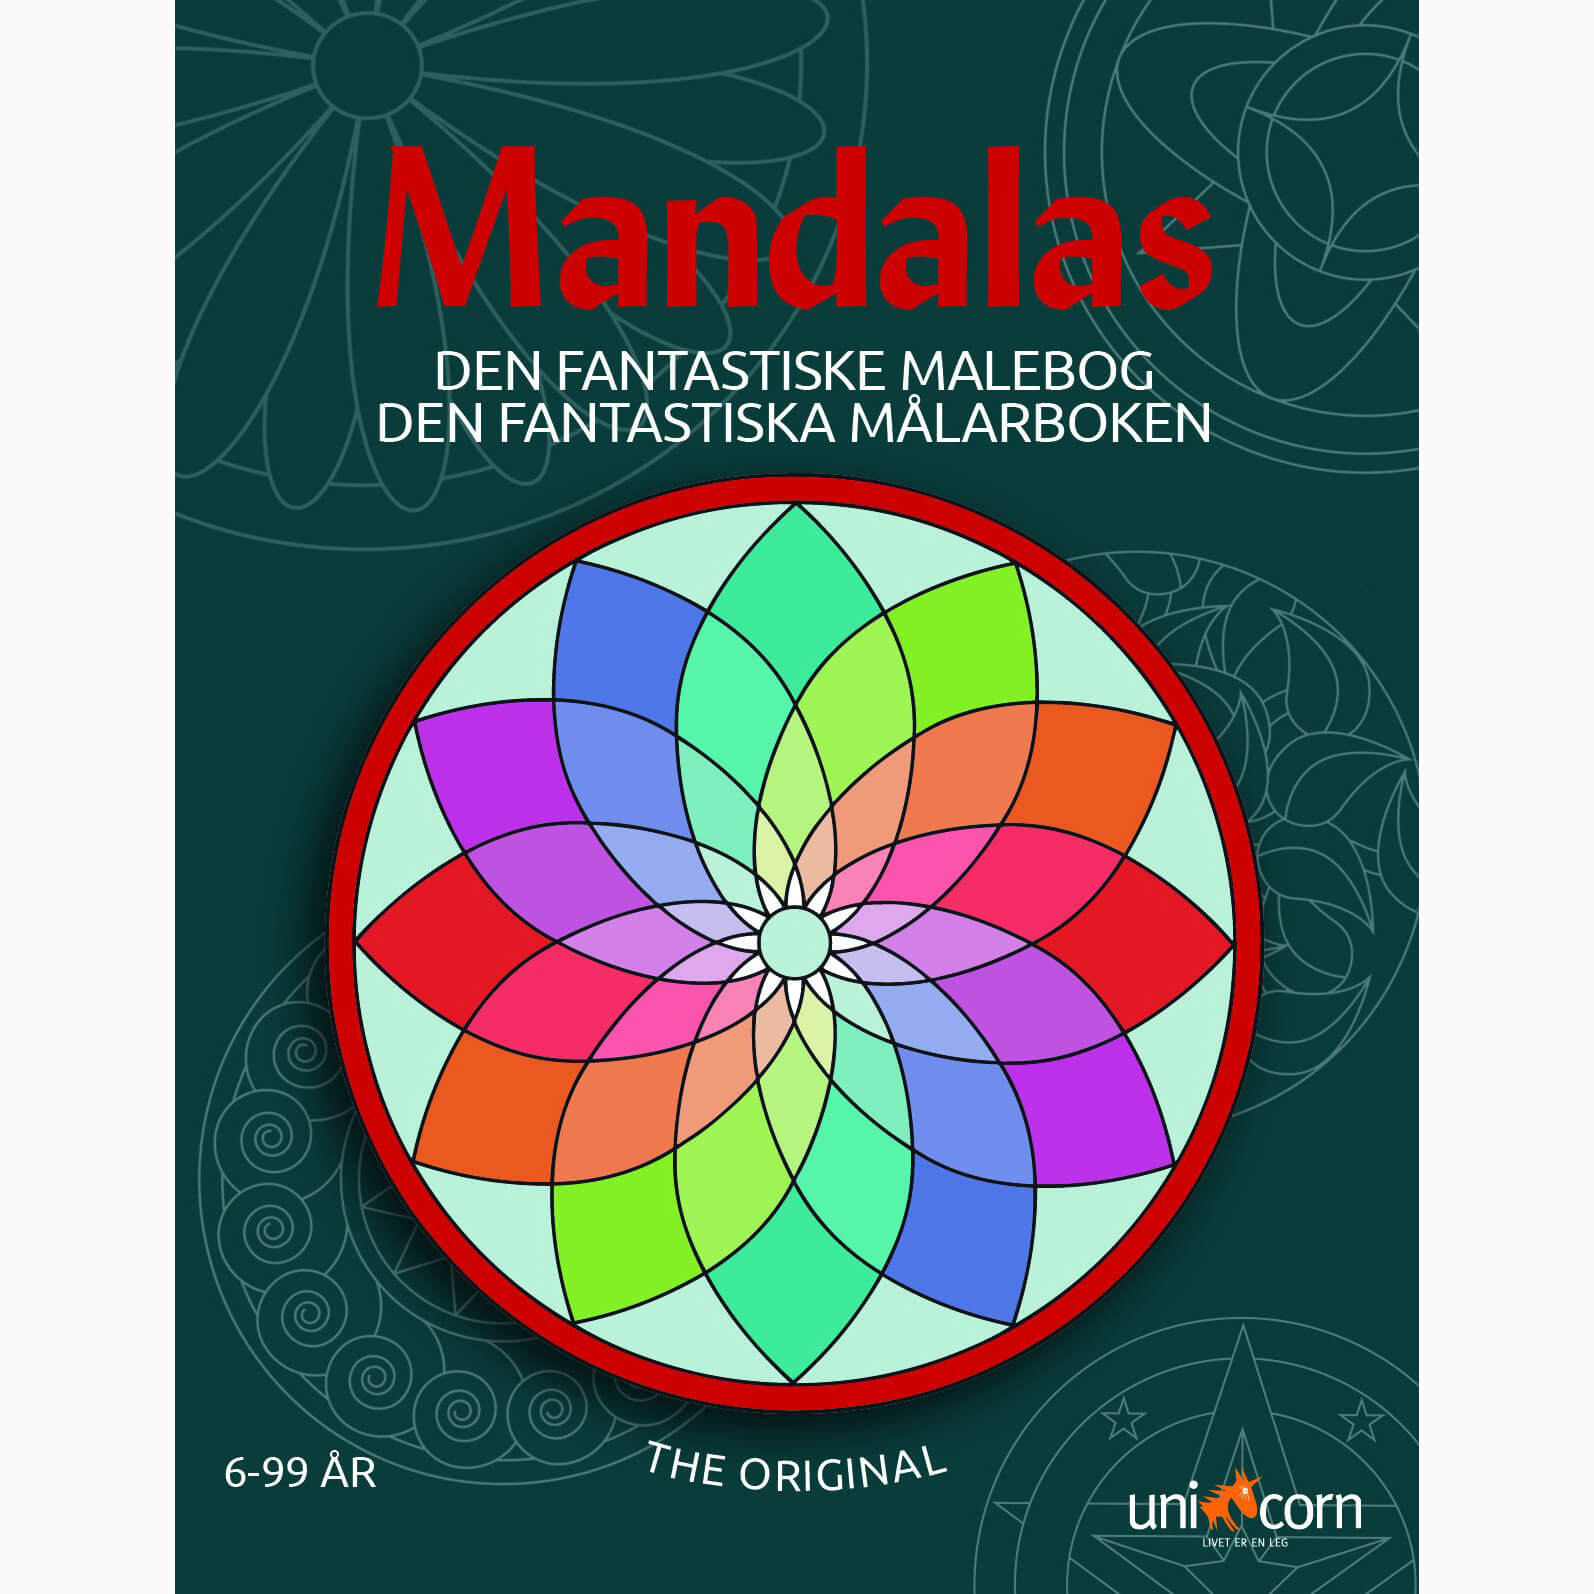 Mandalas - Den Fantastiske Malebog med Mandalas fra 6-99 år